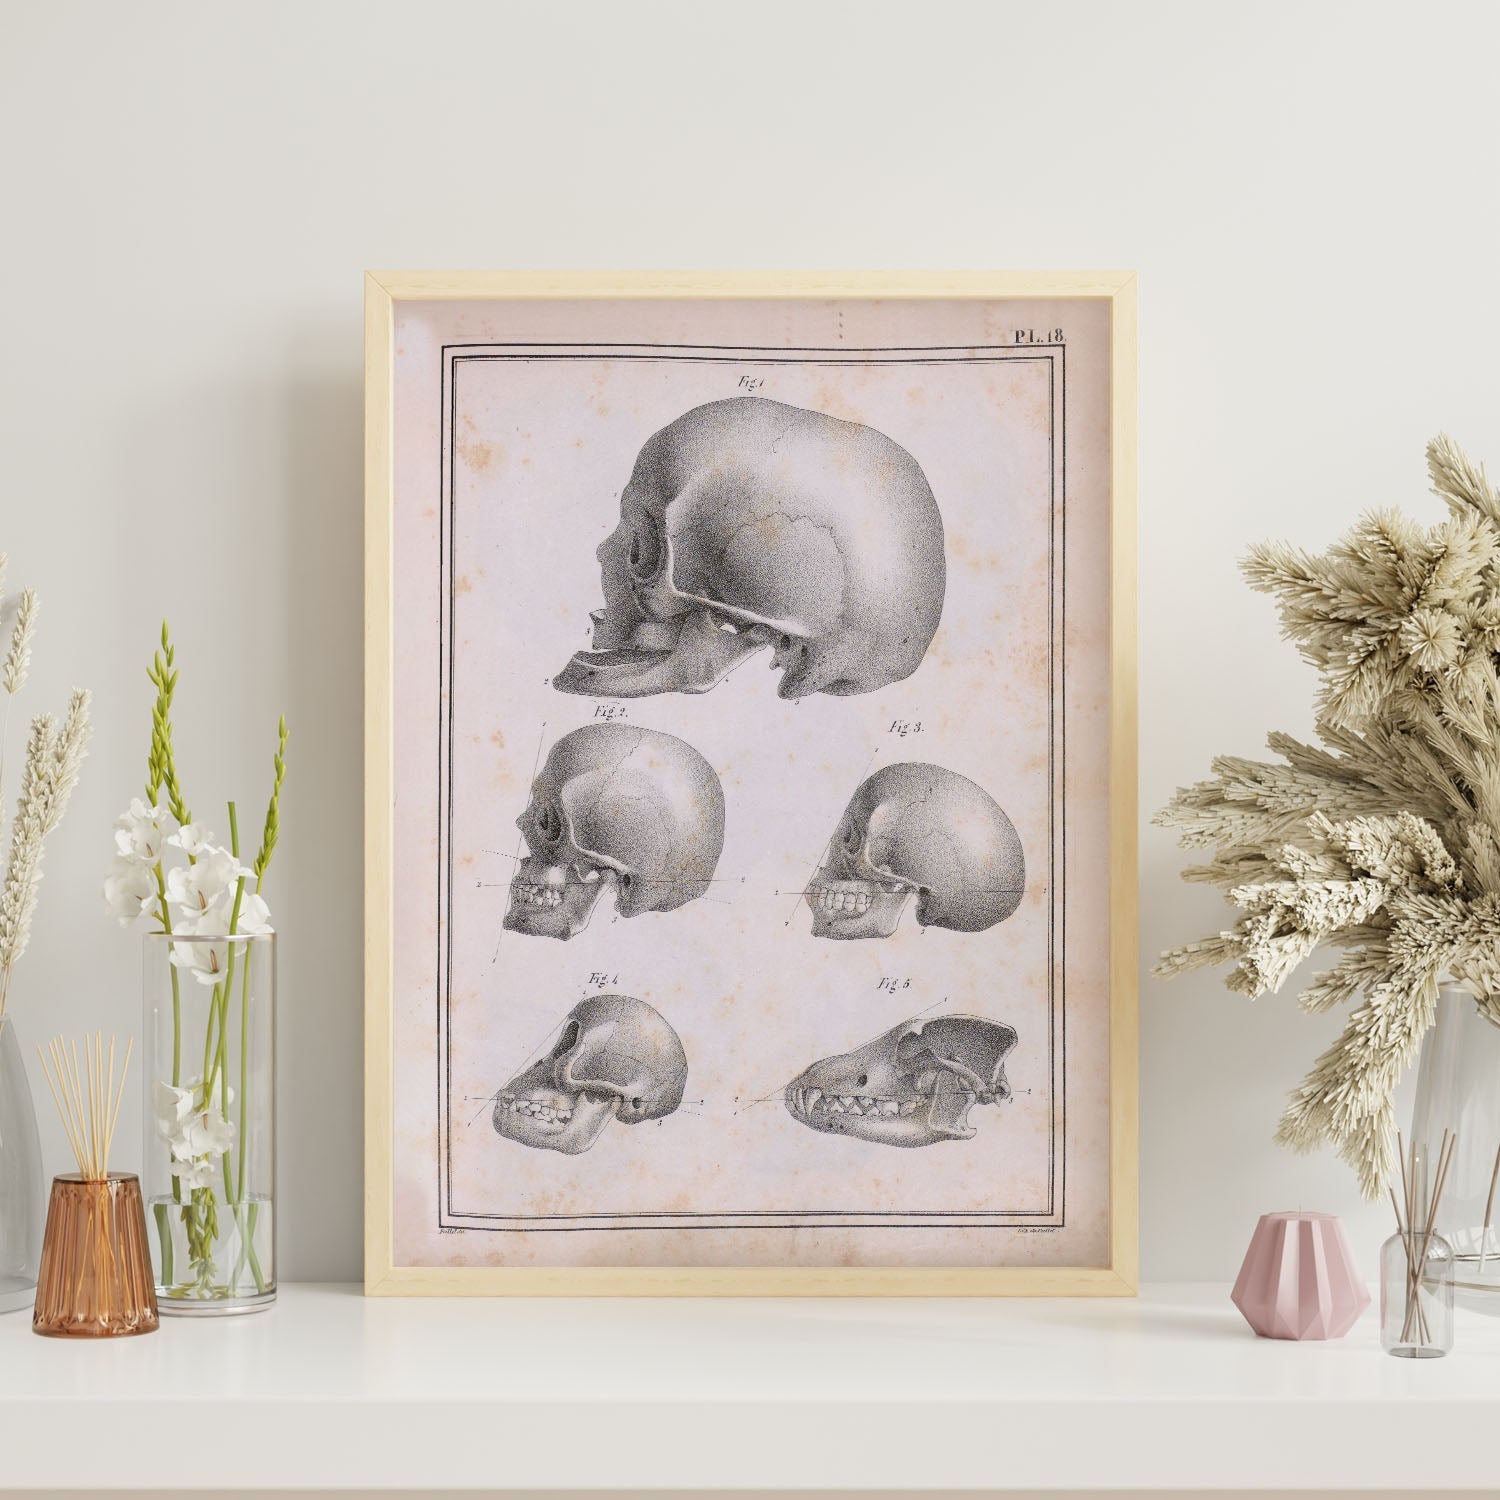 Paillou Skulls; geriatric, caucasiod and negroid adult, orangutan, and dog-Artwork-Nacnic-Nacnic Estudio SL